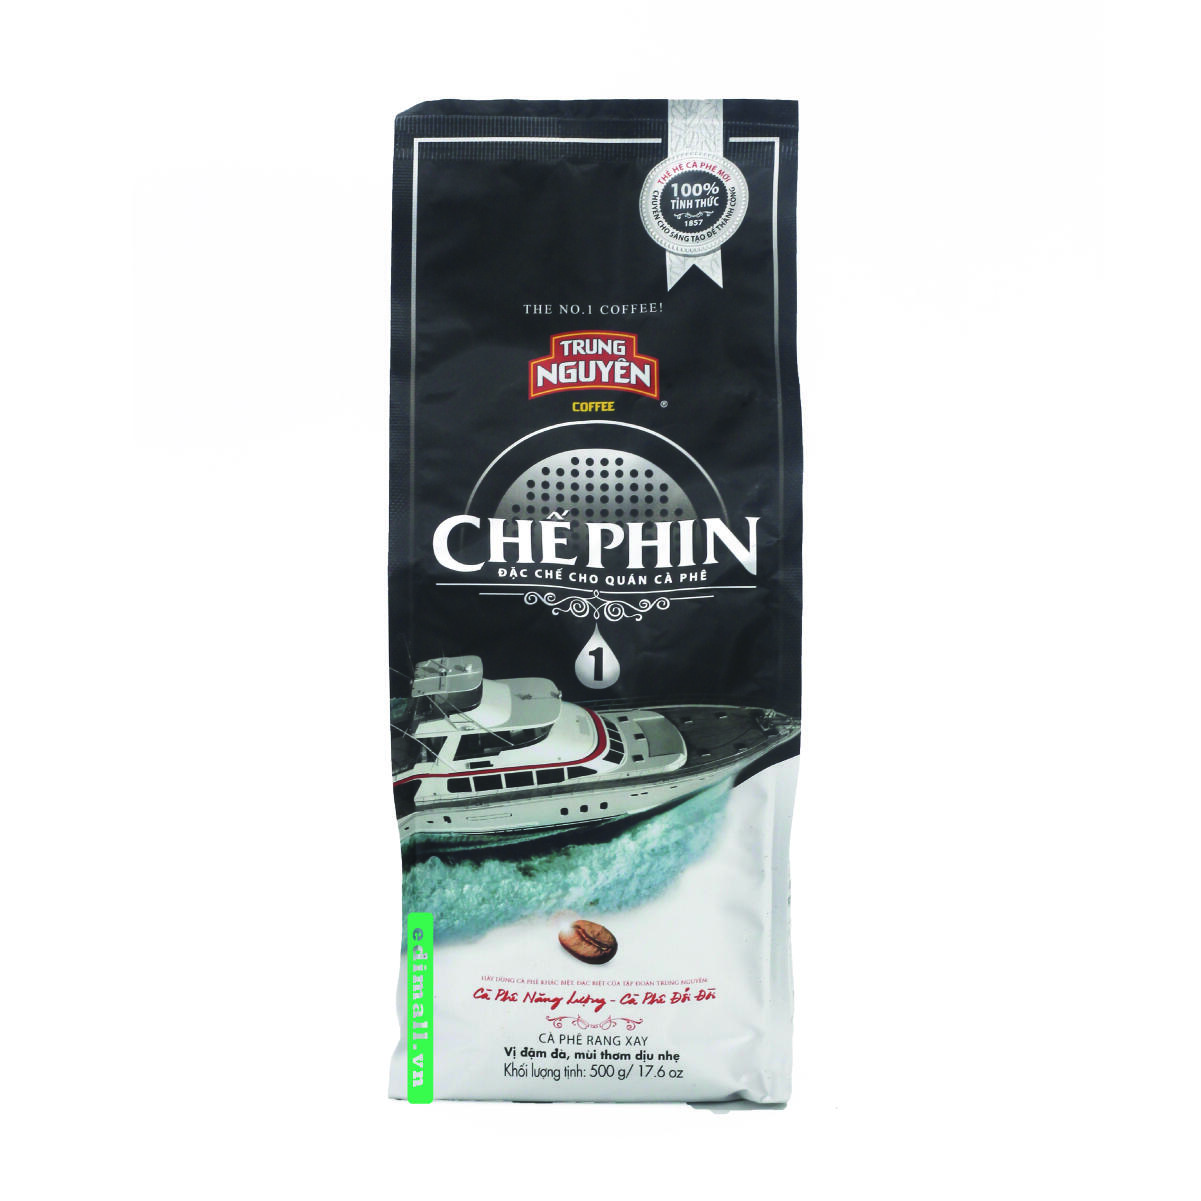 Cà phê Chế phin 1 Trung Nguyên - 500 gram